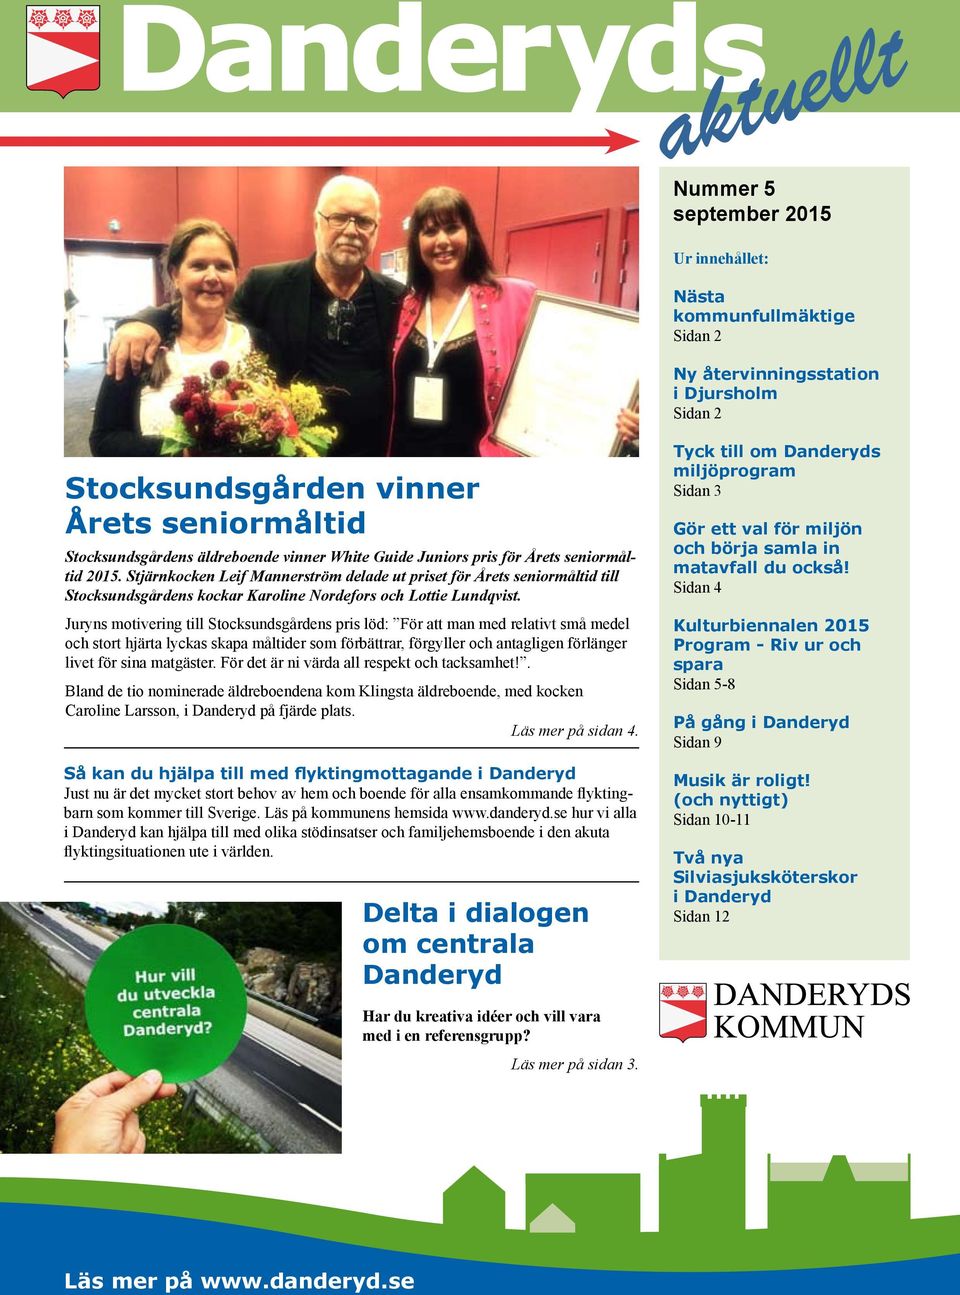 Stjärnkocken Leif Mannerström delade ut priset för Årets seniormåltid till Stocksundsgårdens kockar Karoline Nordefors och Lottie Lundqvist.